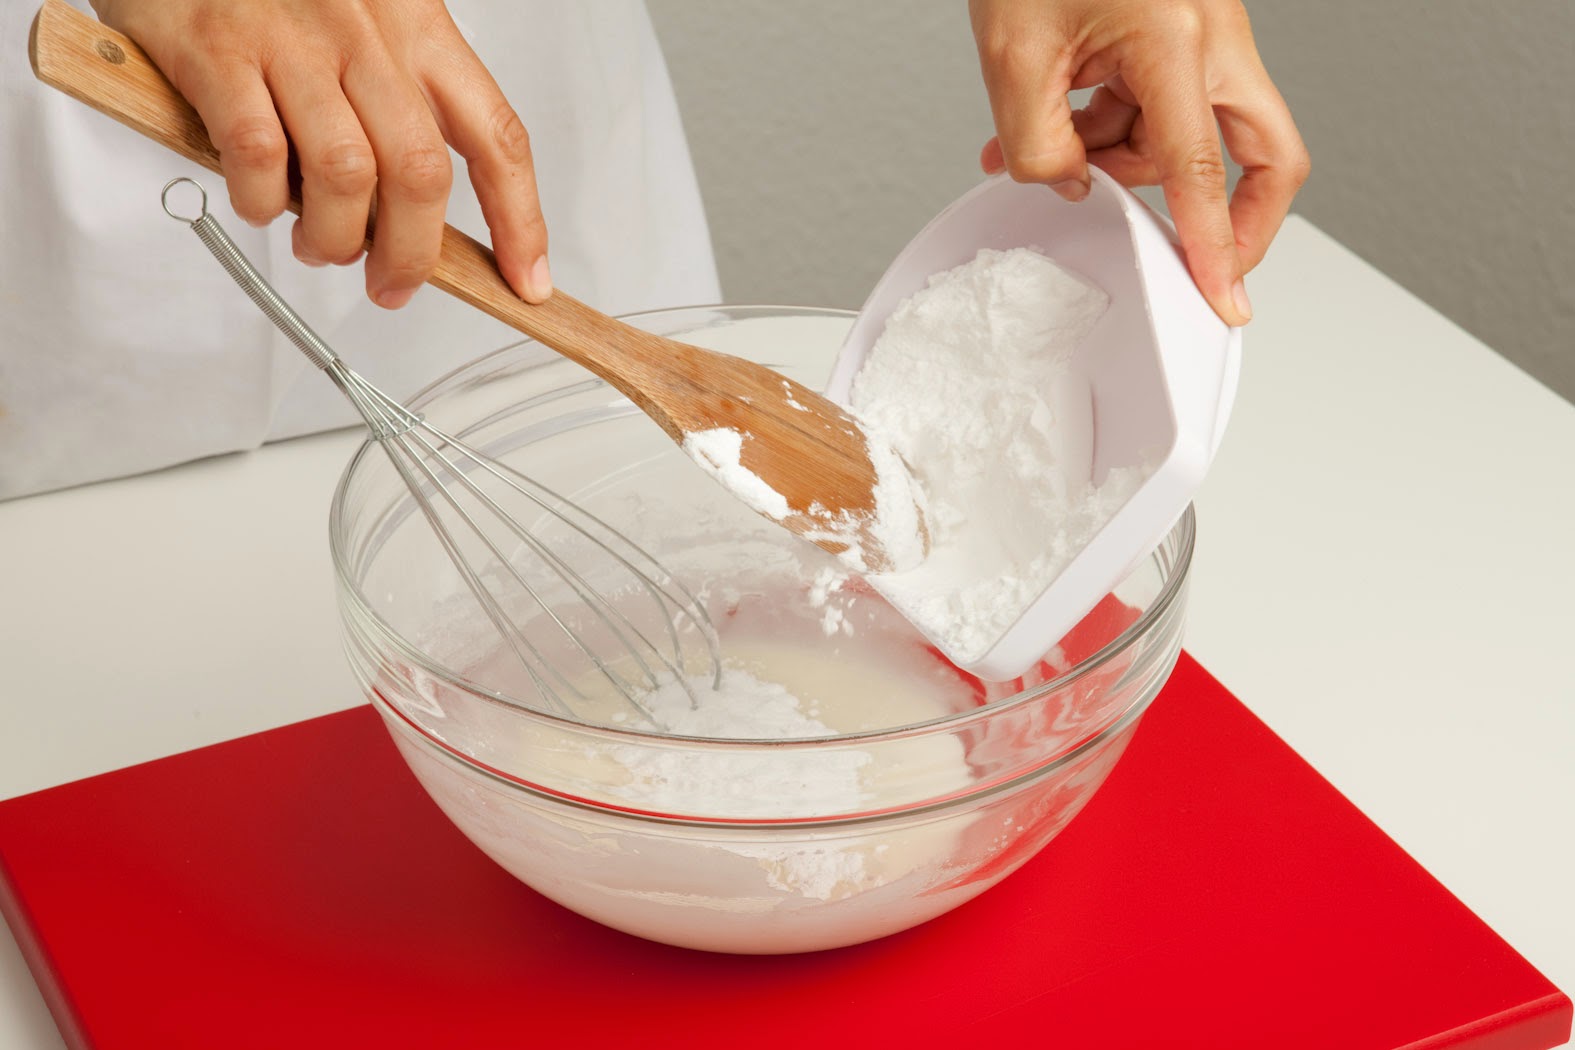 Conoce un poco de más sobre la Masa Flexible y la Porcelana Fría - Minauri  Sew - Craft - Cakes - Pastry - Cooking